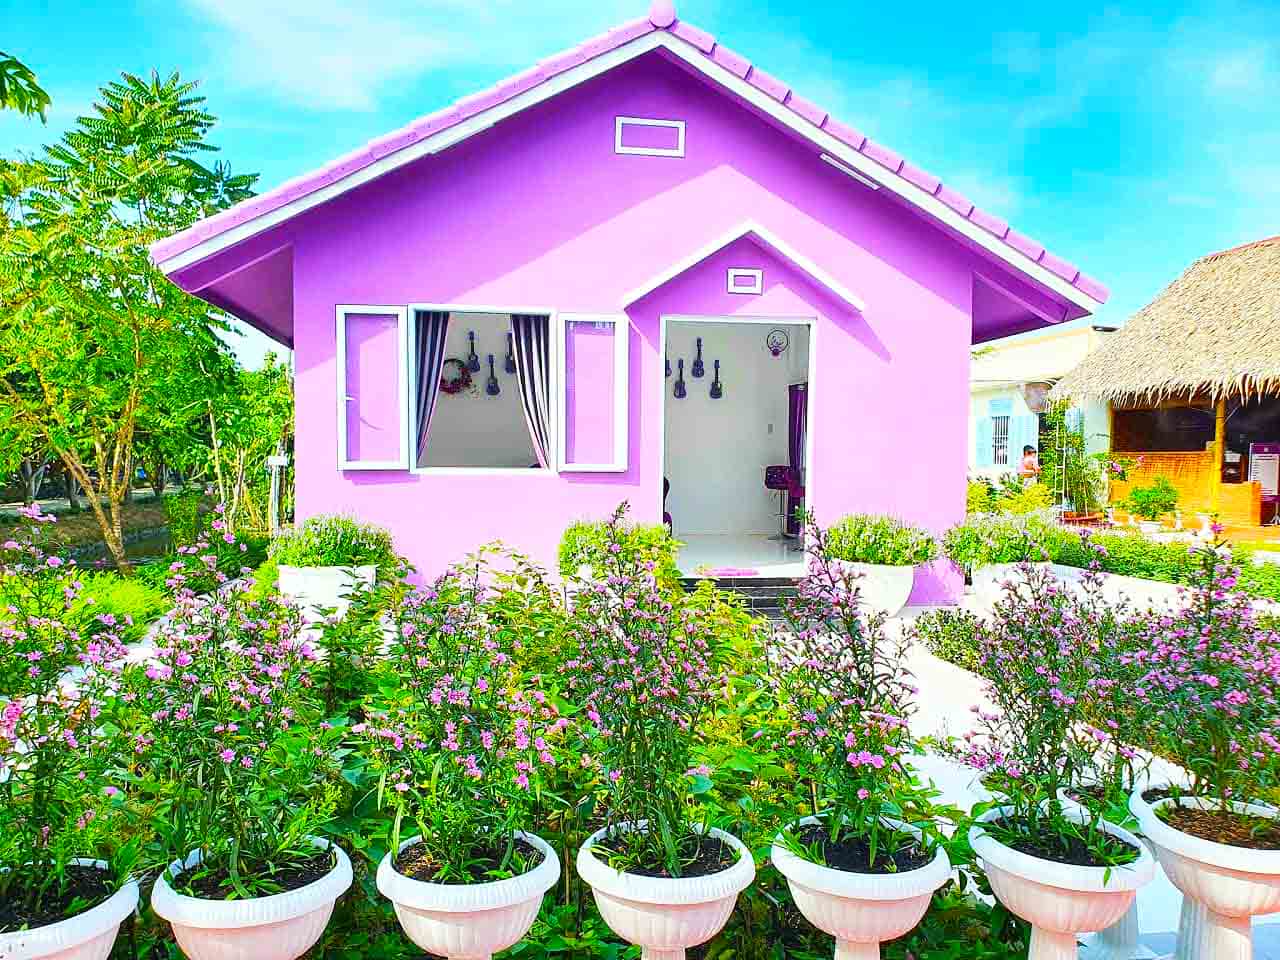 Căn nhà màu tím với nhiều loài hoa màu tím xung quanh